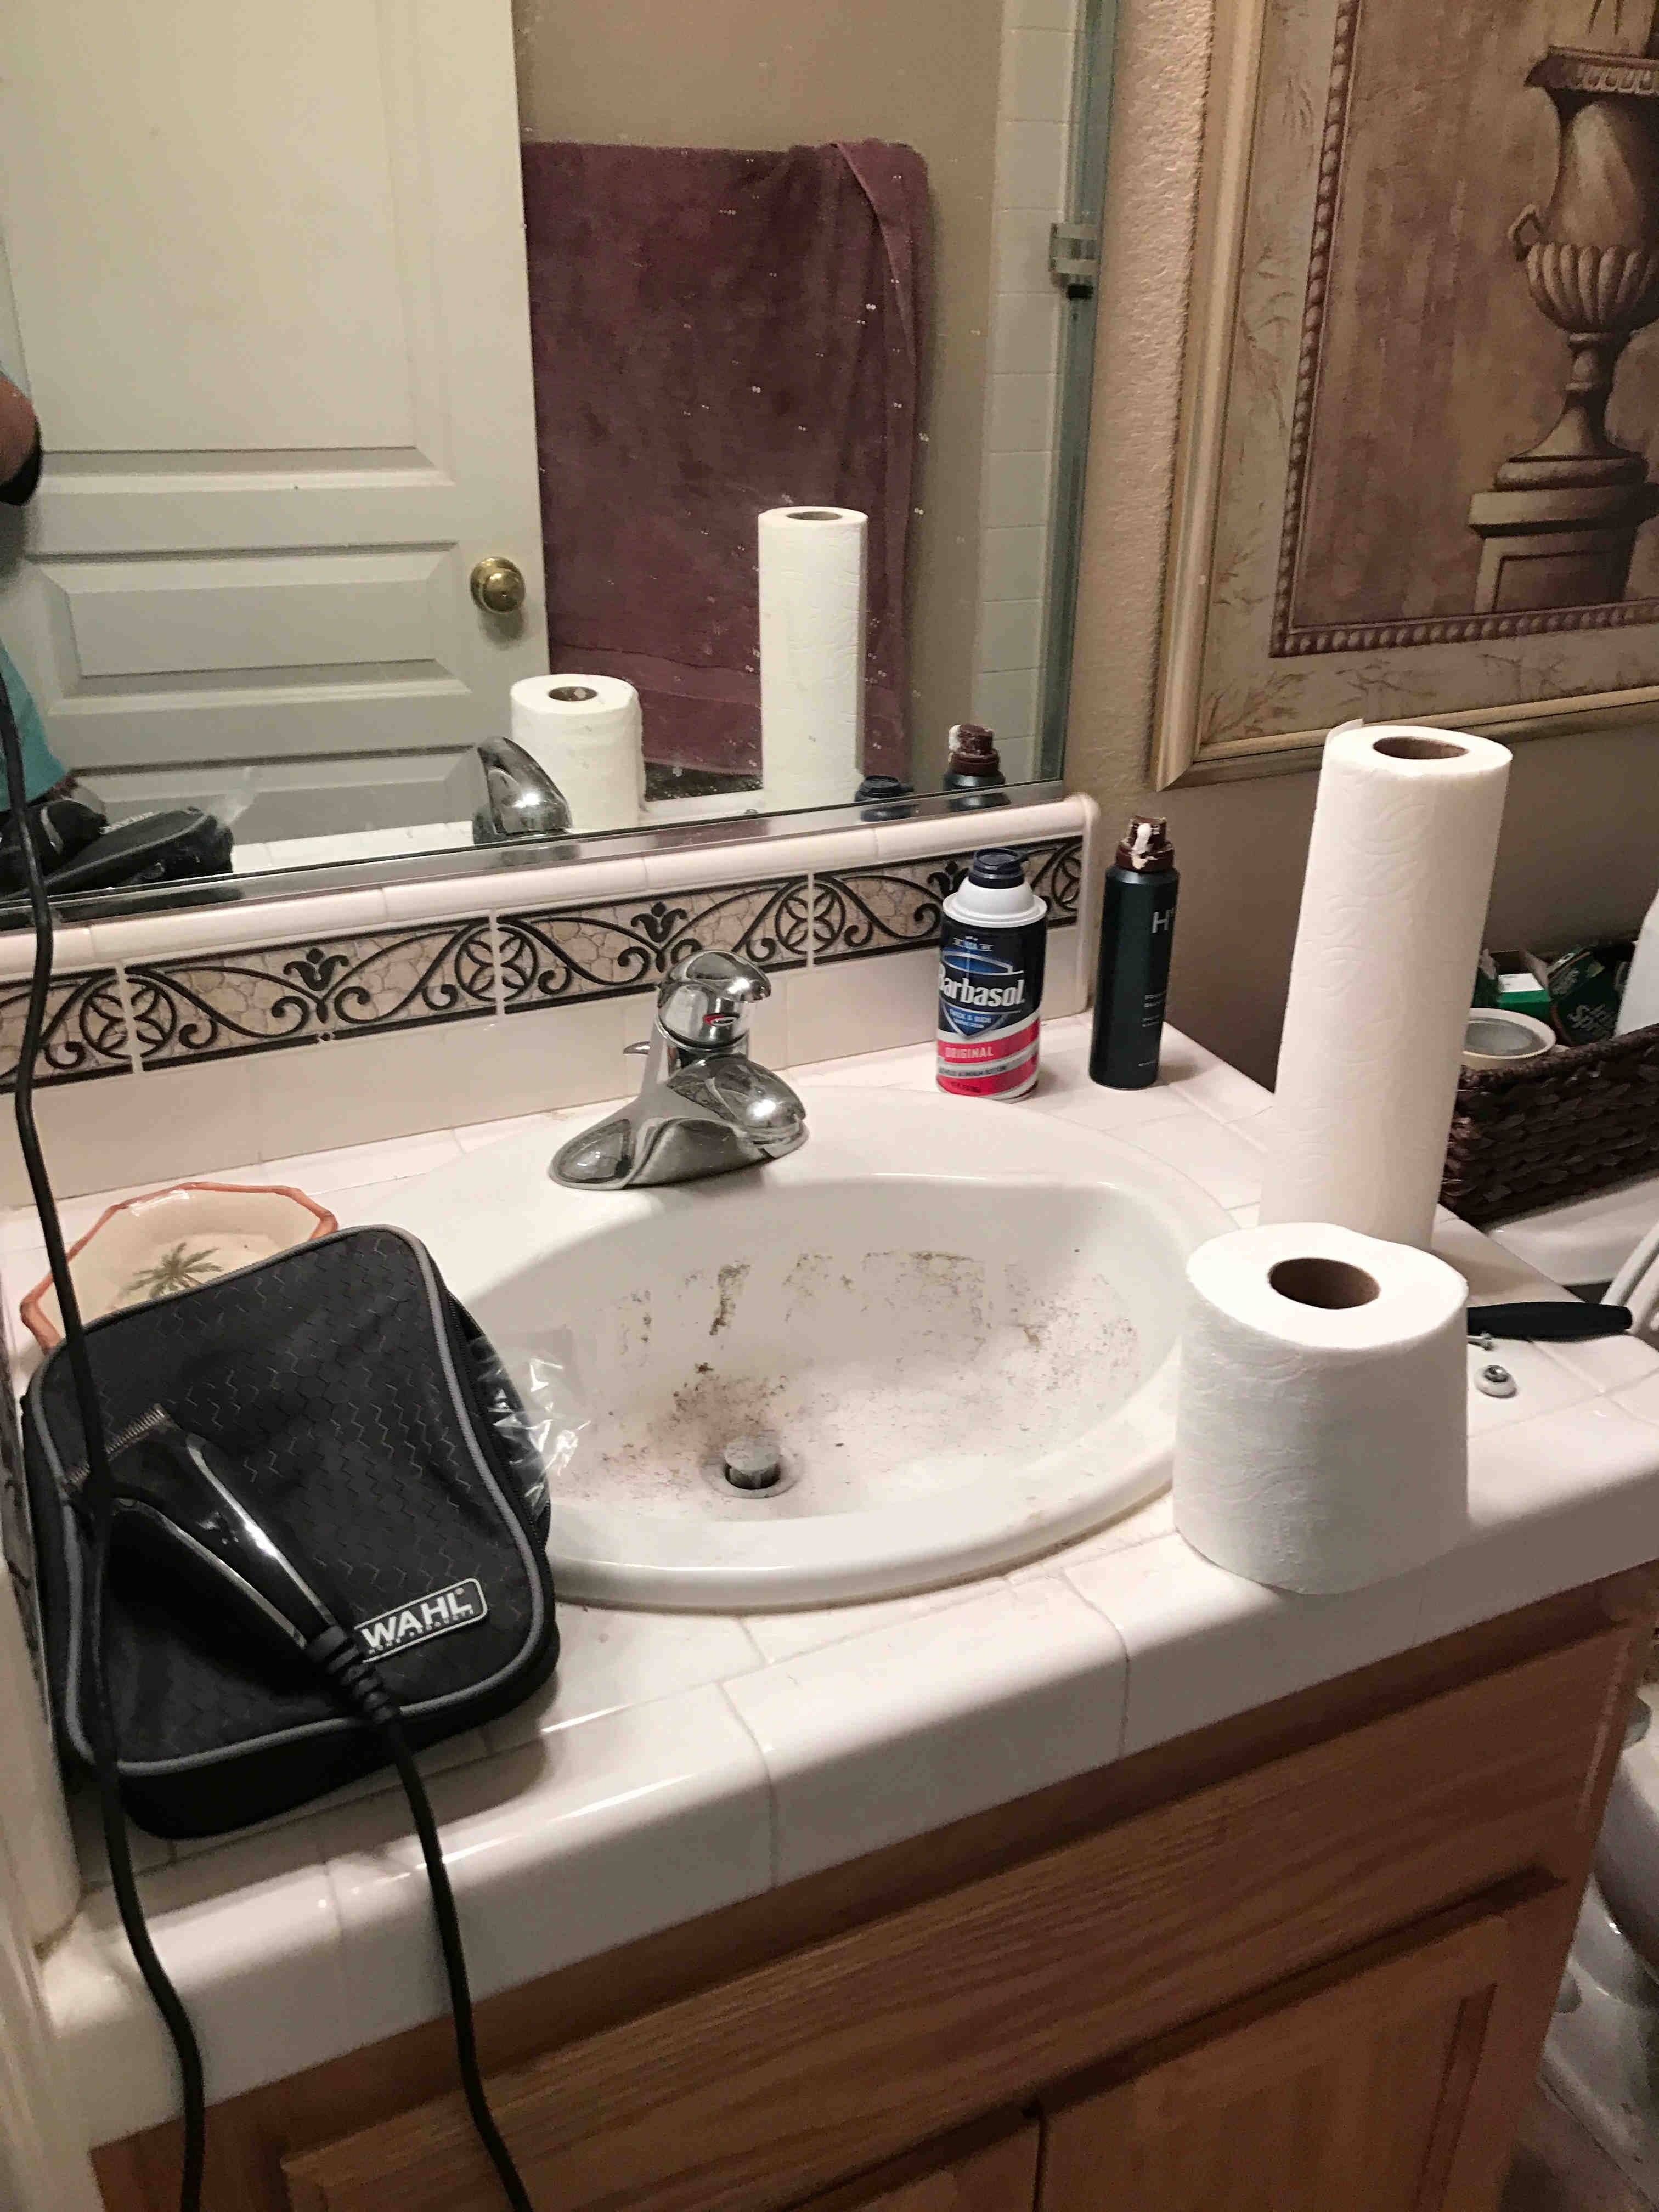 bathroom sink before being cleaned